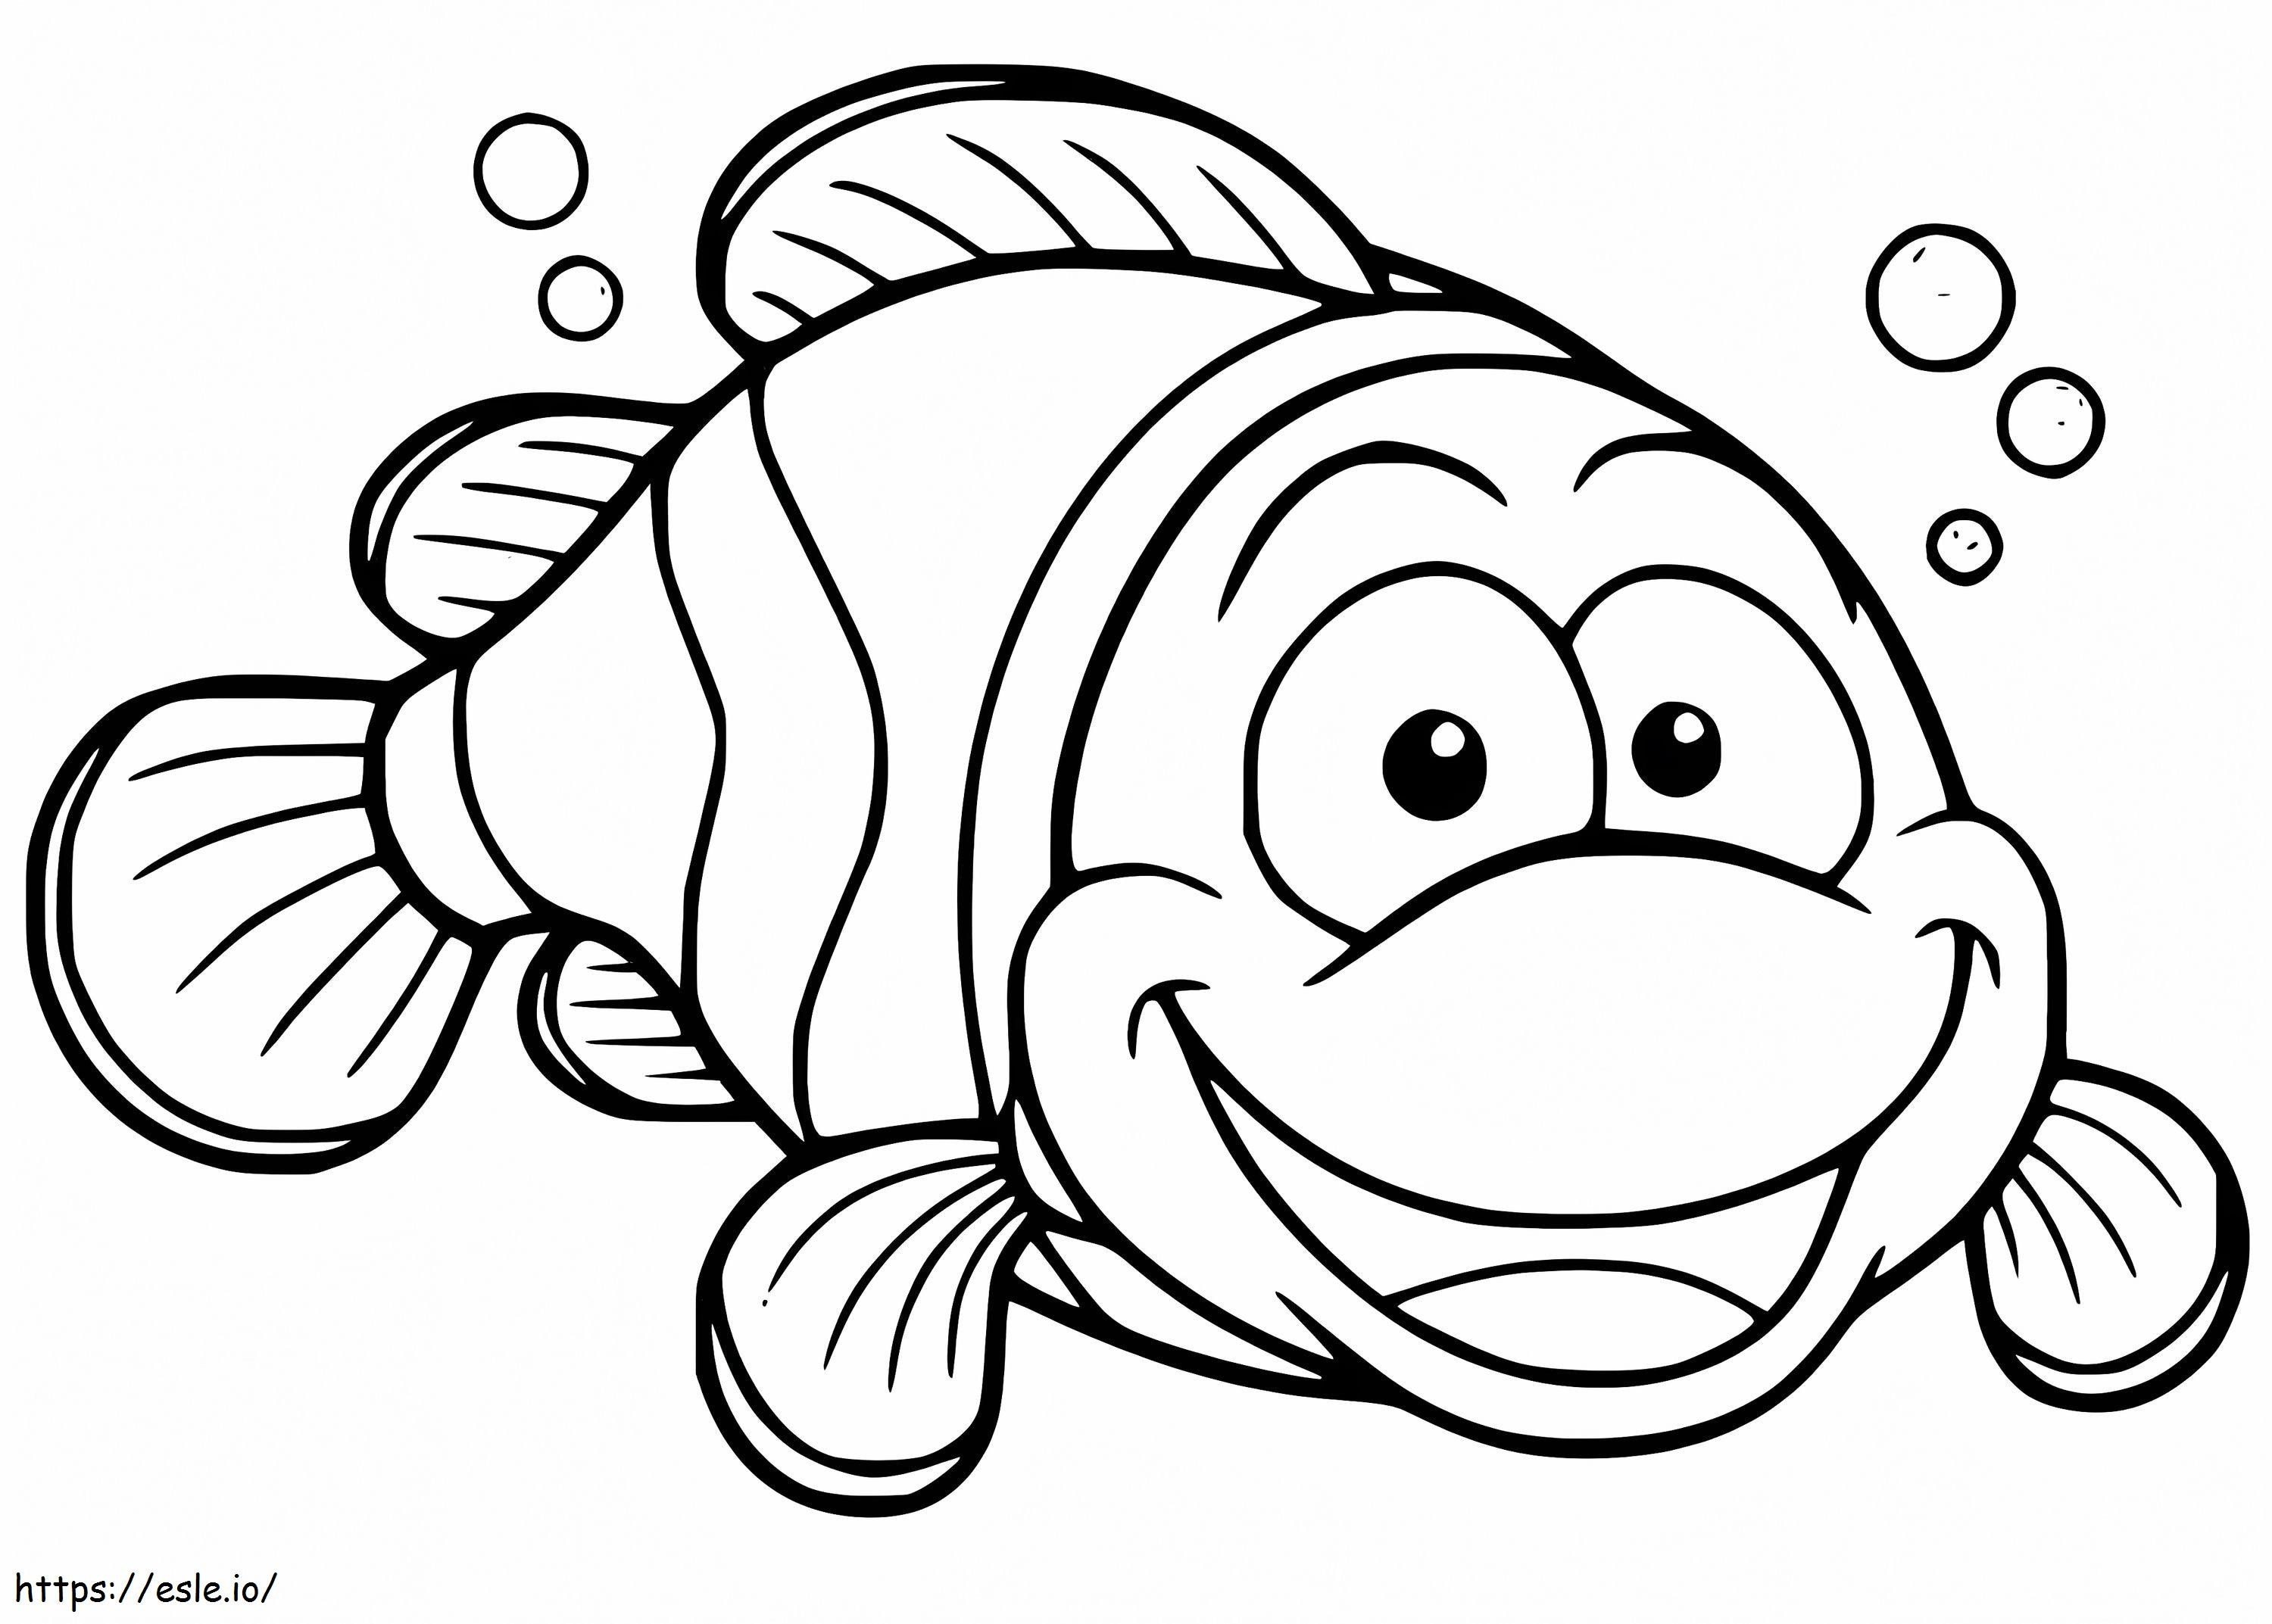 Pește clovn zâmbitor de colorat